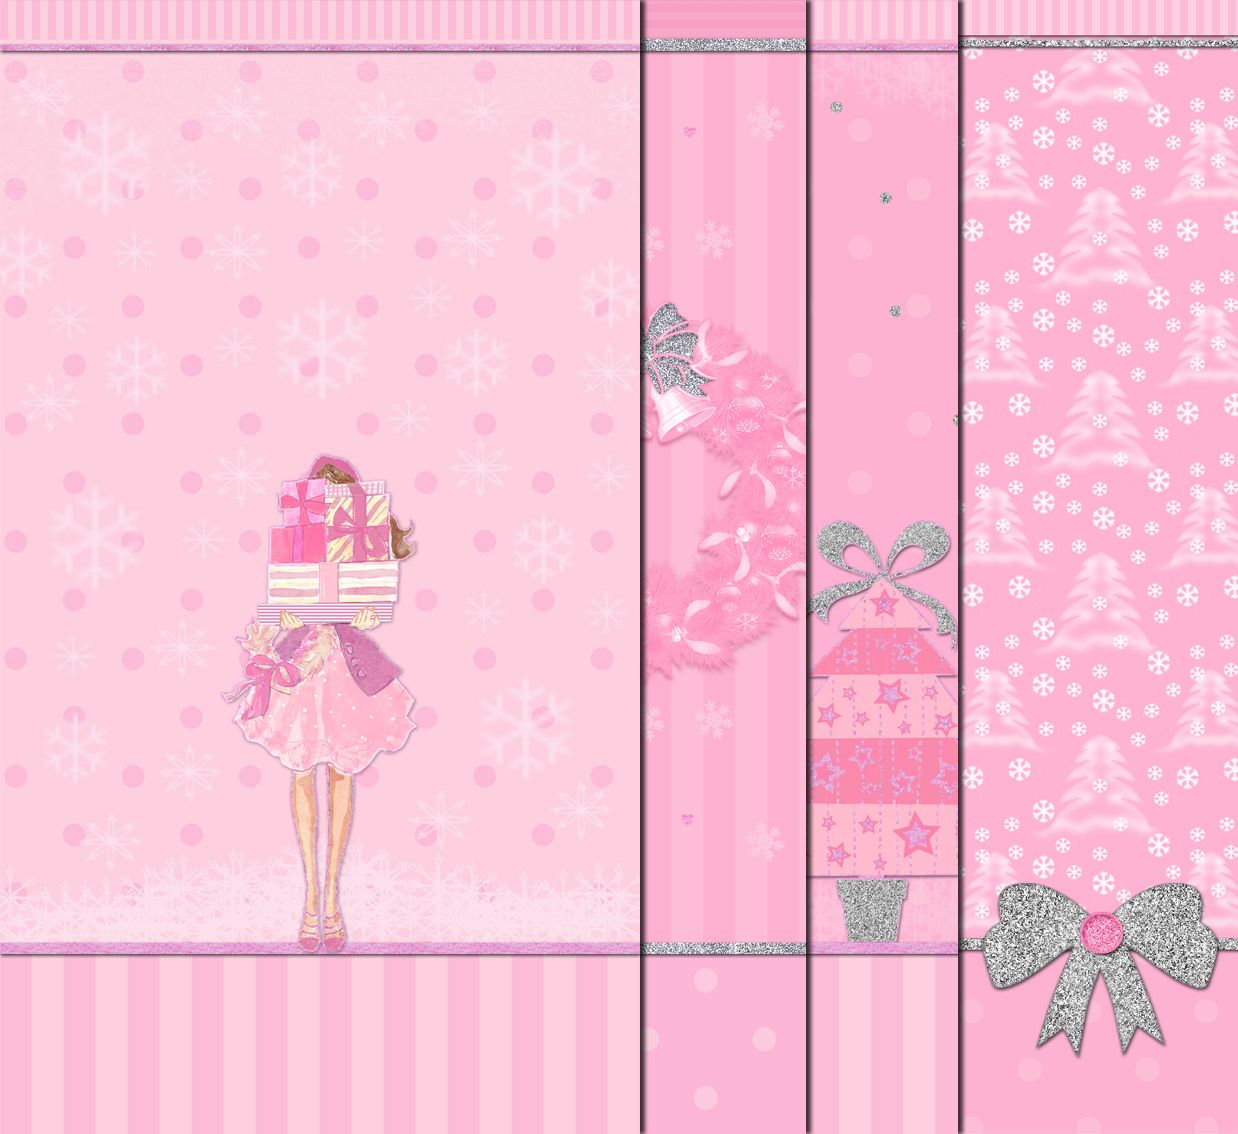 ♡ Cute Walls ♡: Pink christmas walls